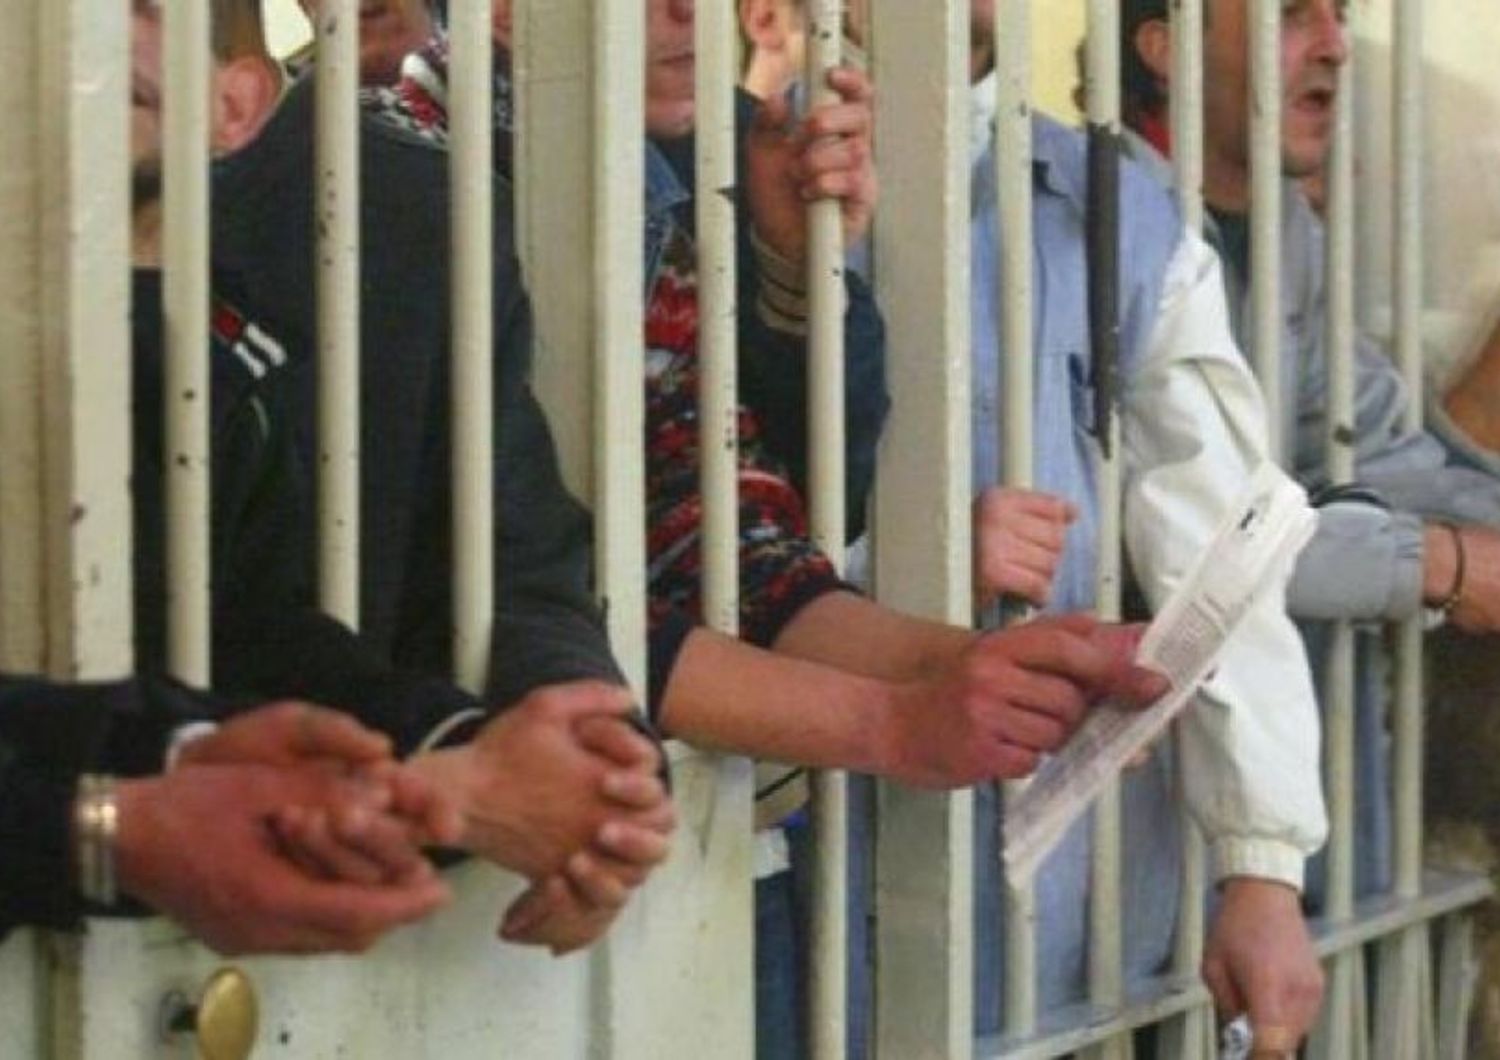 &nbsp;carcere prigione carcerati detenuti detenzione cella